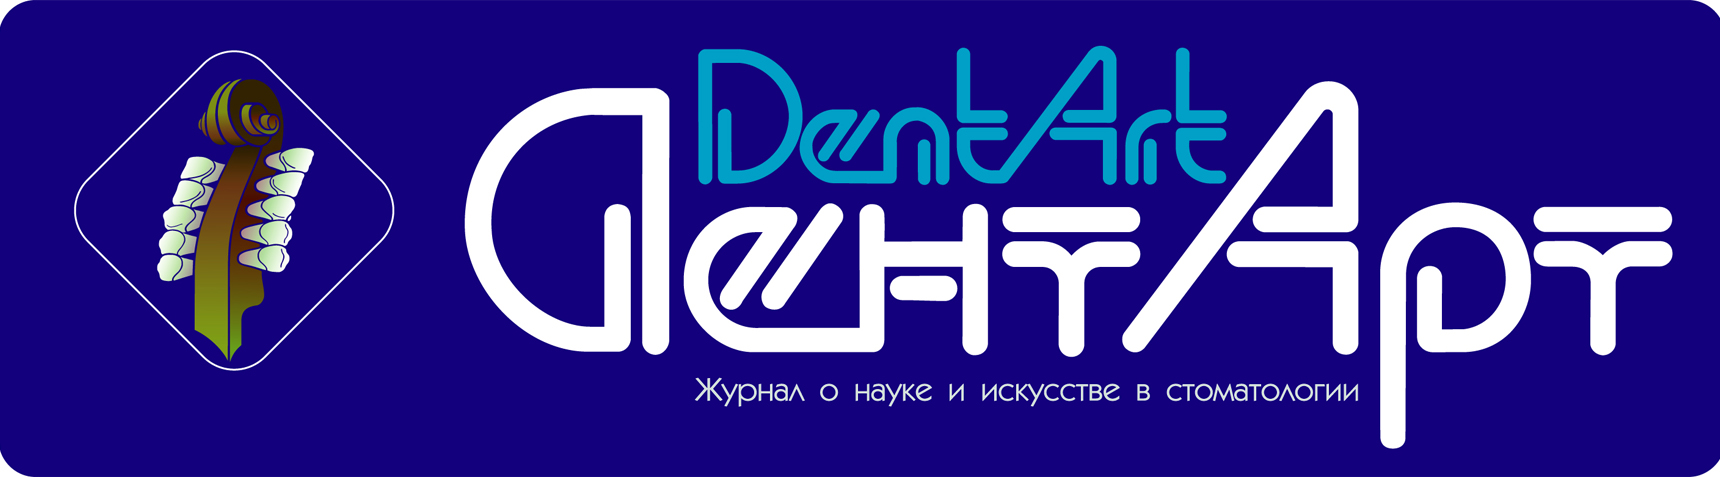 Эмблема и лого стоматологического журнала